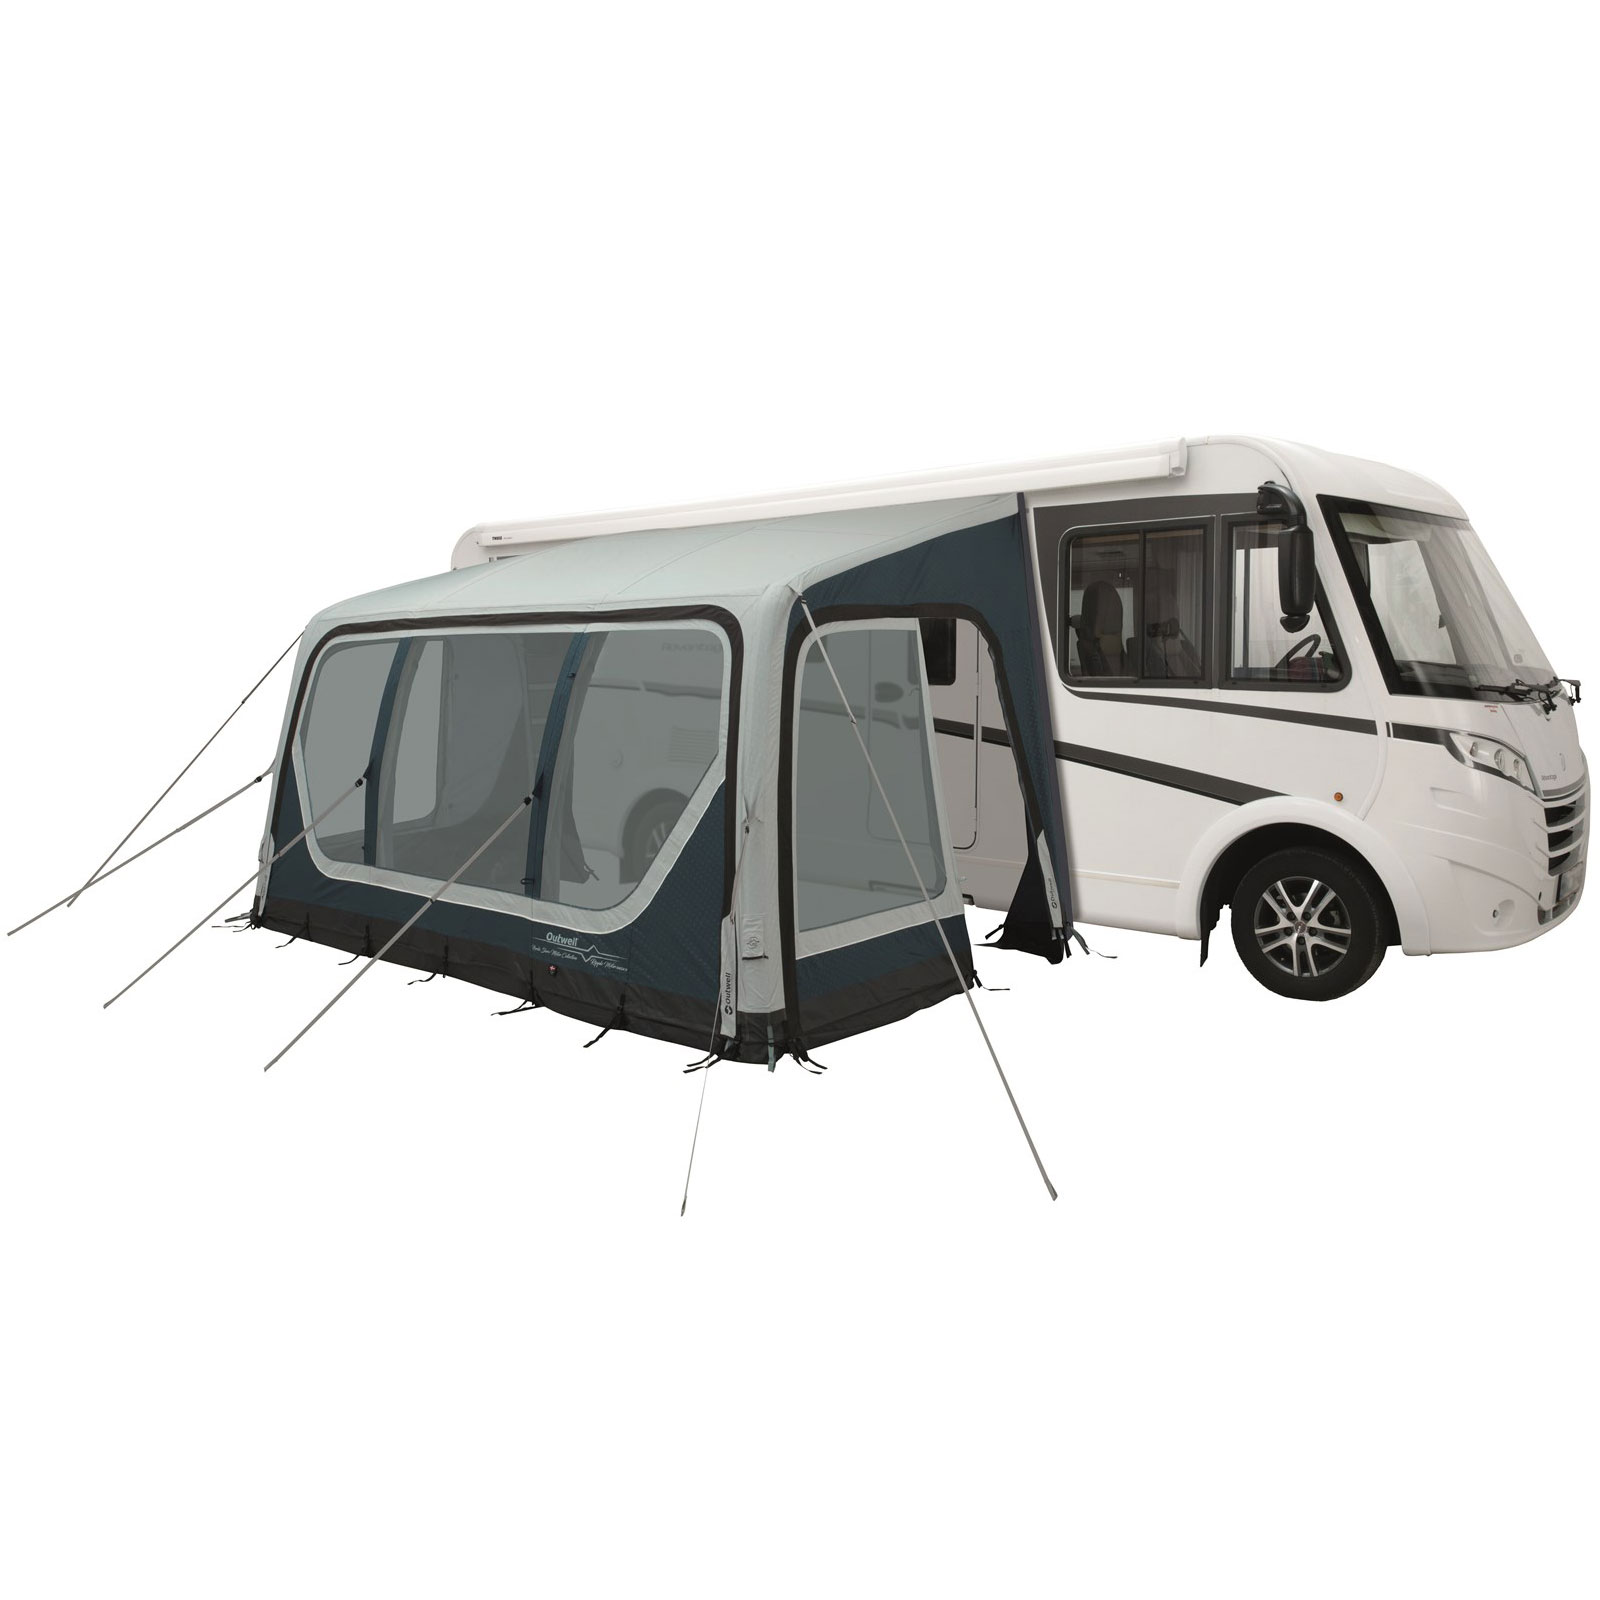 Vorzelt 250x440 Ripple-M Markise für Caravan, Reisemobil, Camper Camping Vordach